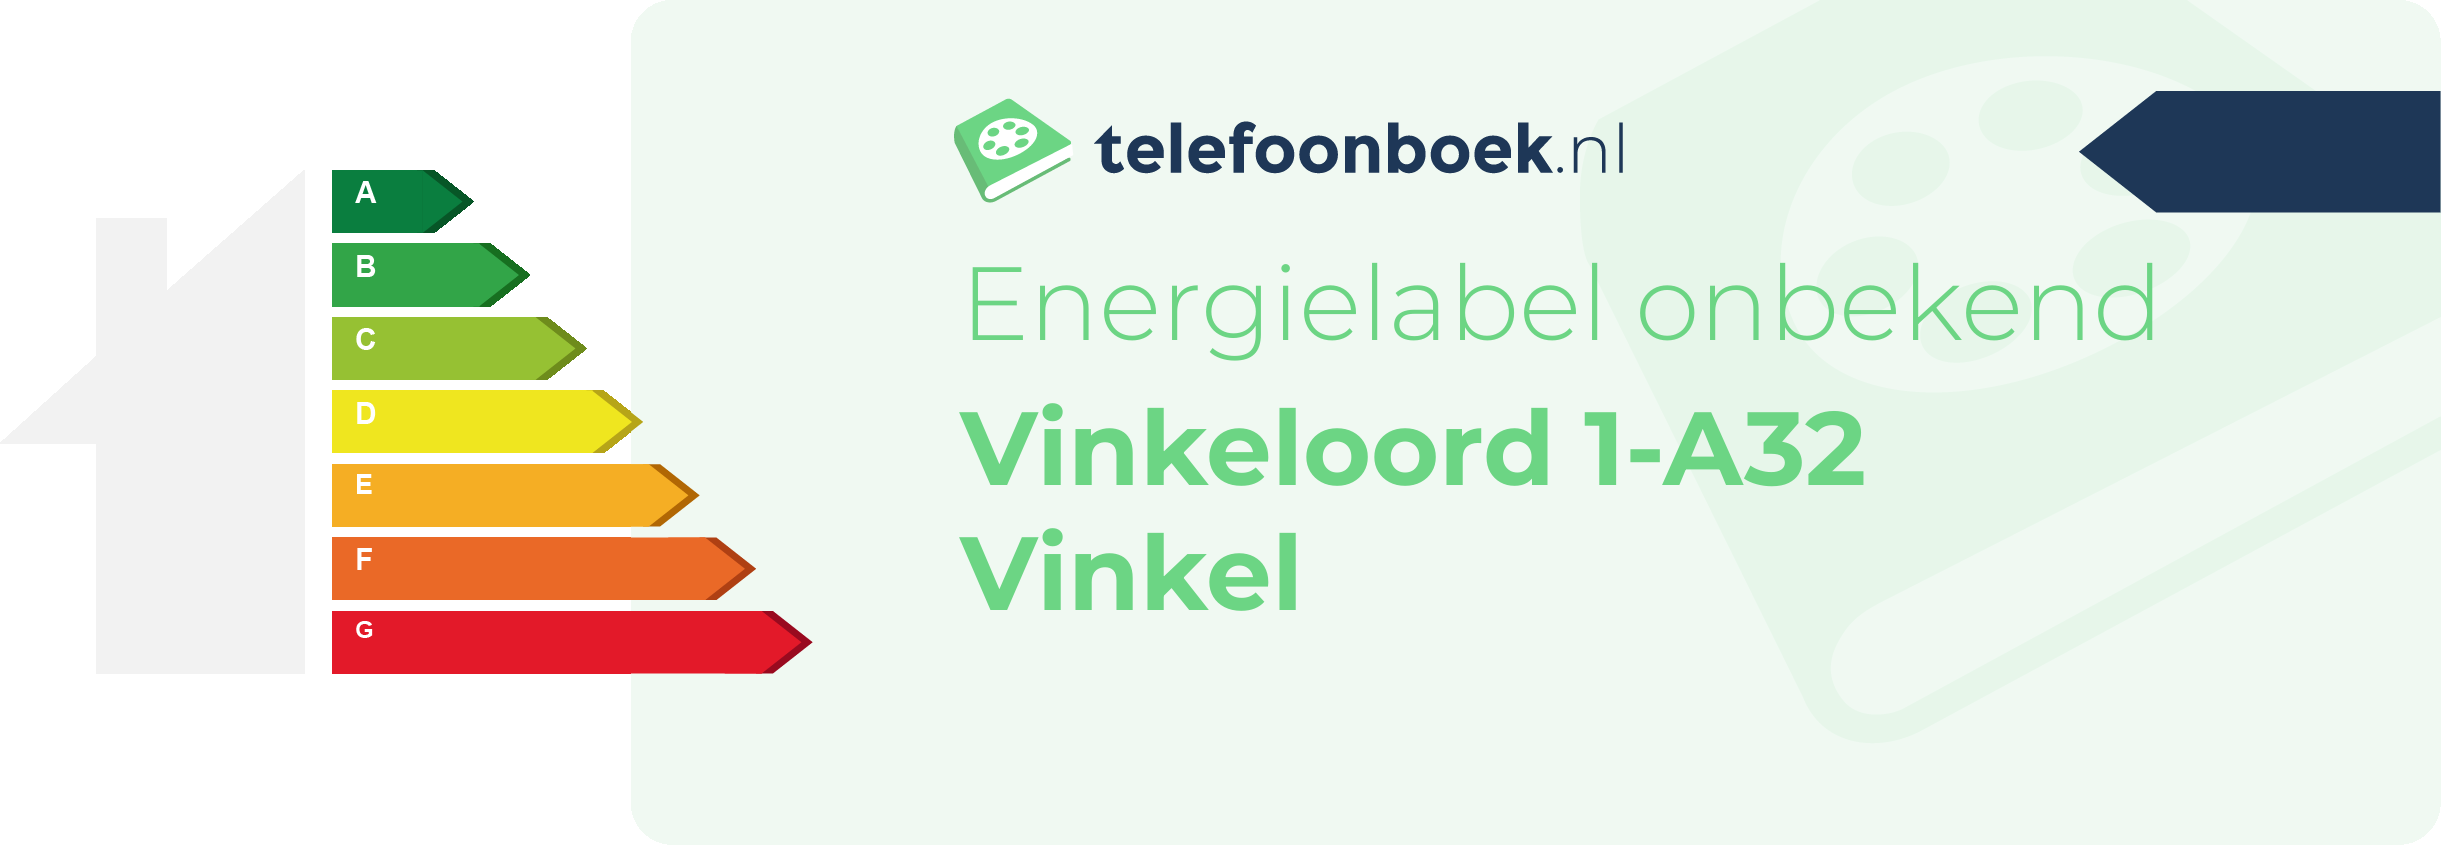 Energielabel Vinkeloord 1-A32 Vinkel